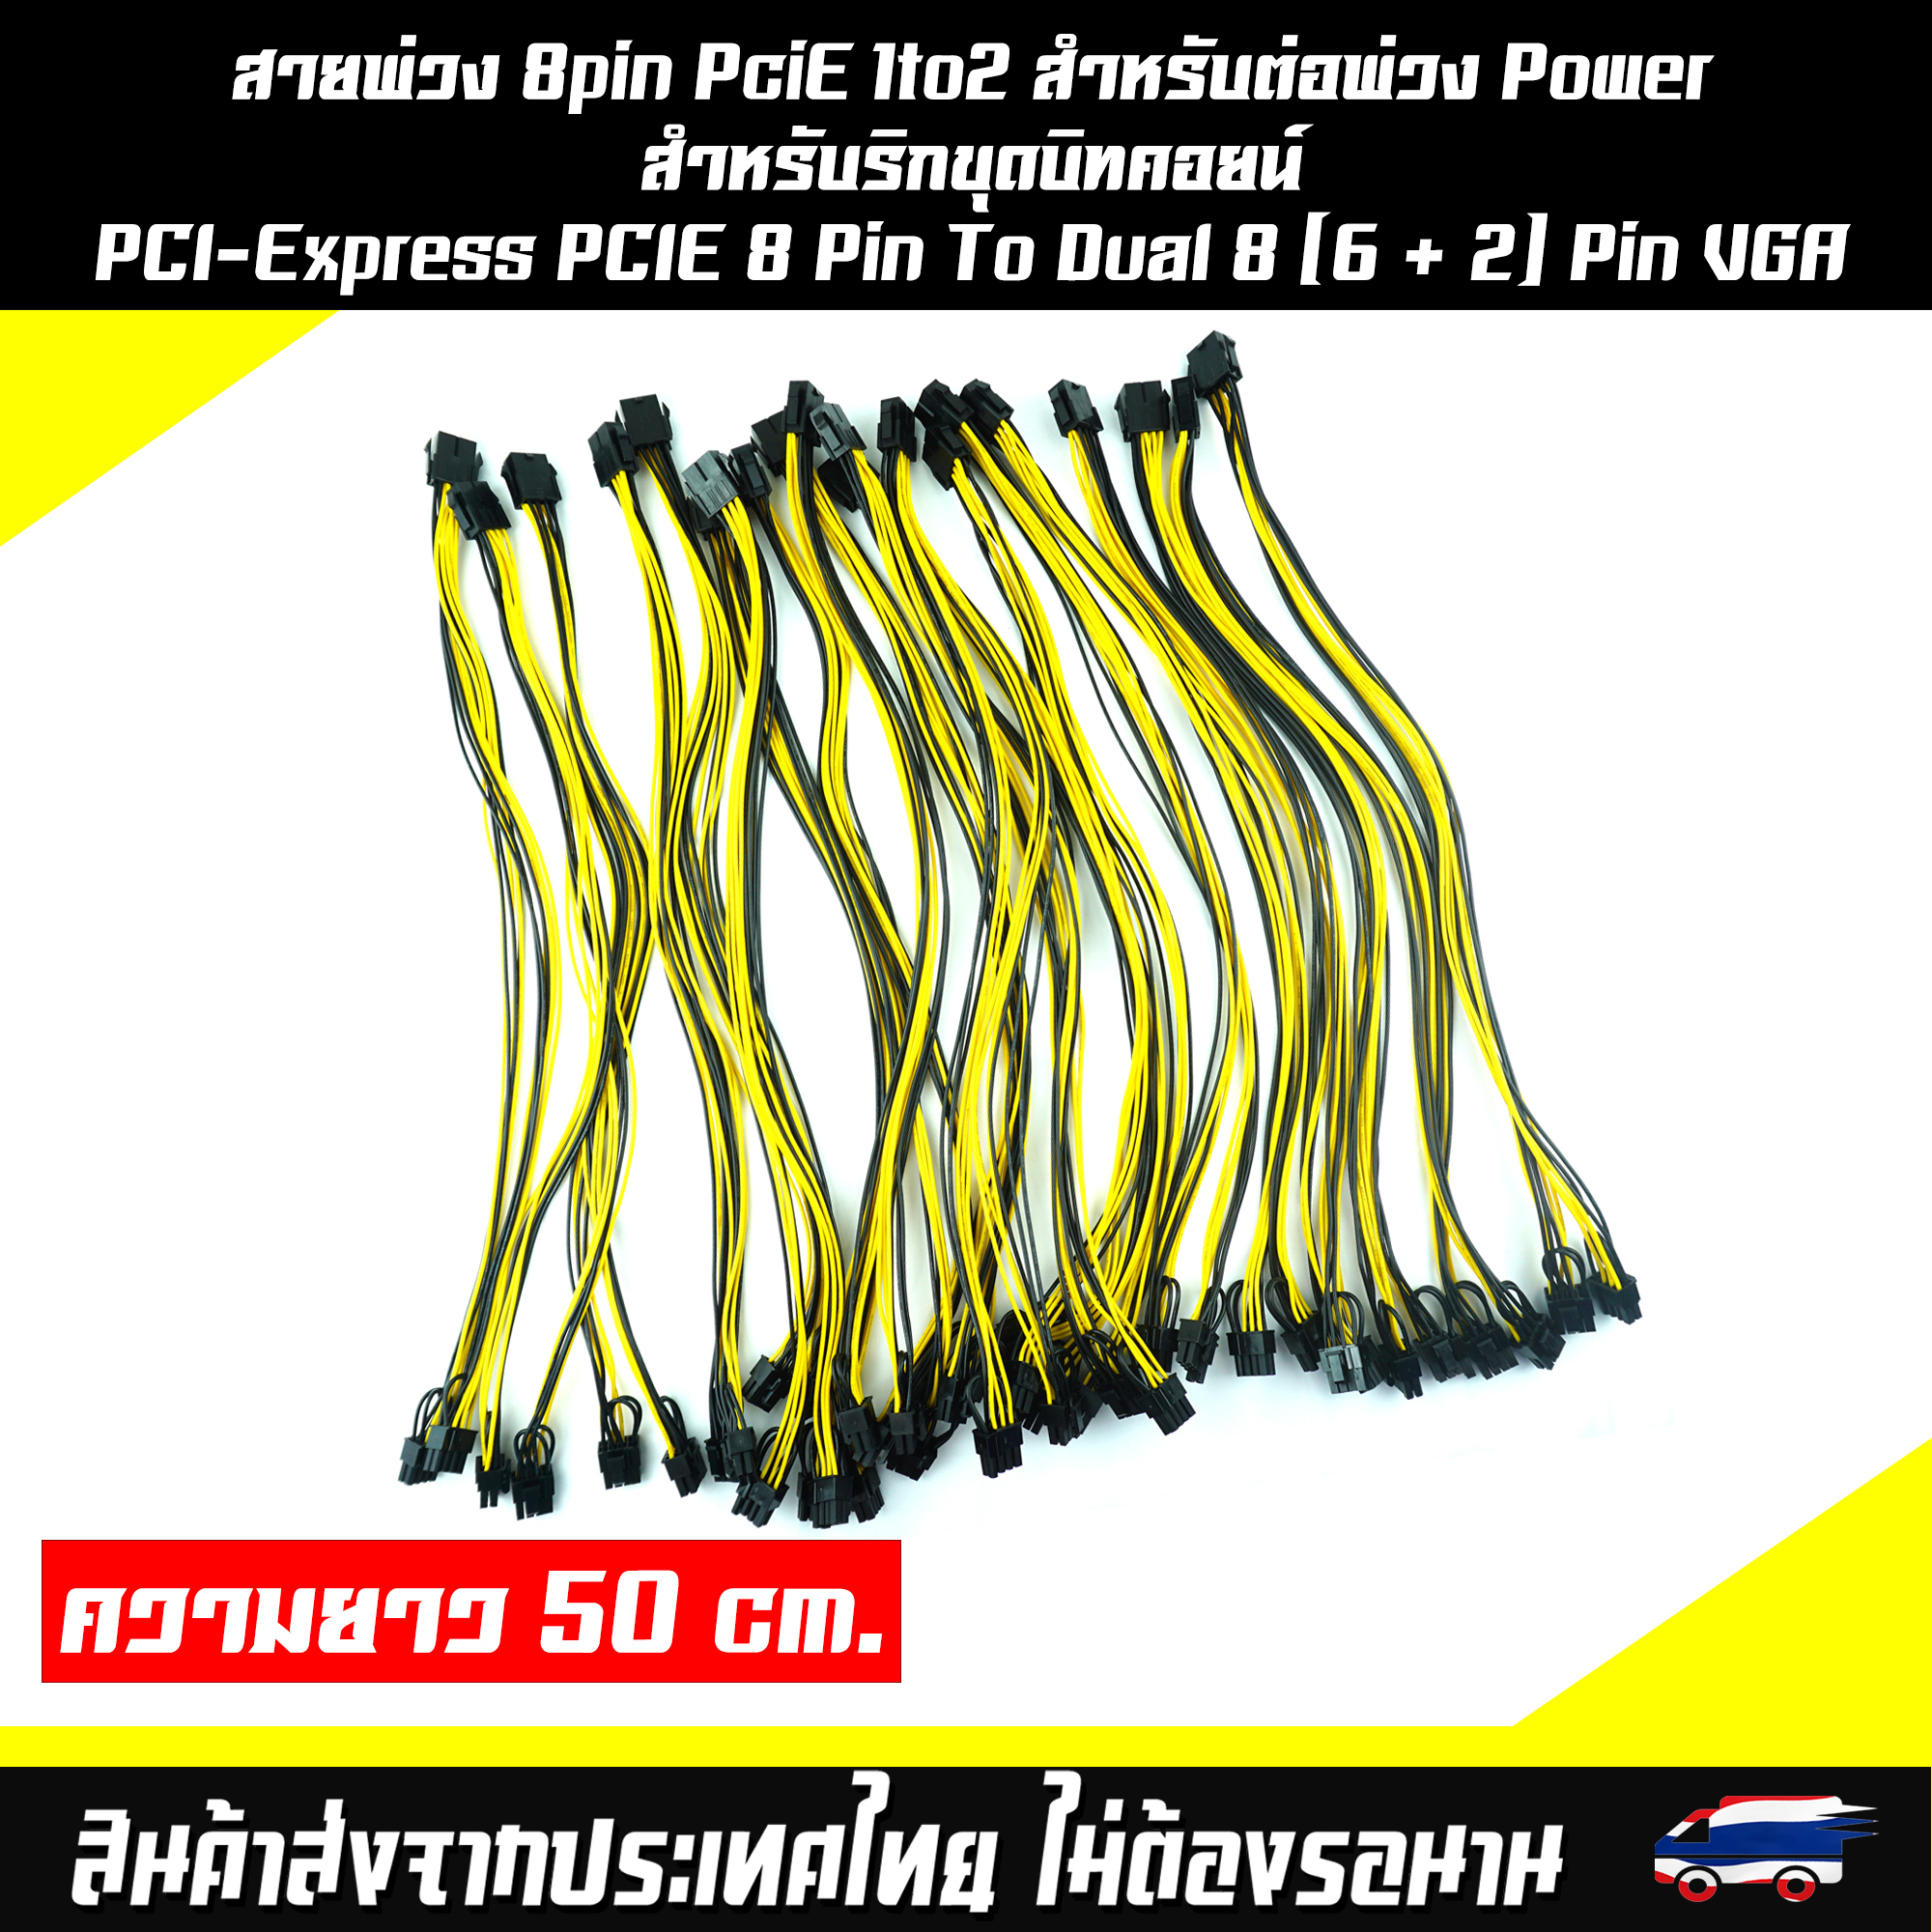 รูปภาพเพิ่มเติมเกี่ยวกับ สายพ่วง 8pin PciE 1to2 สำหรับต่อพ่วง Power สำหรับริกขุดบิทคอยน์ PCI-Express PCIE 8 Pin To Dual 8 (6 + 2) Pin VGA กราฟิกการ์ดสายแยก สายพ่วง